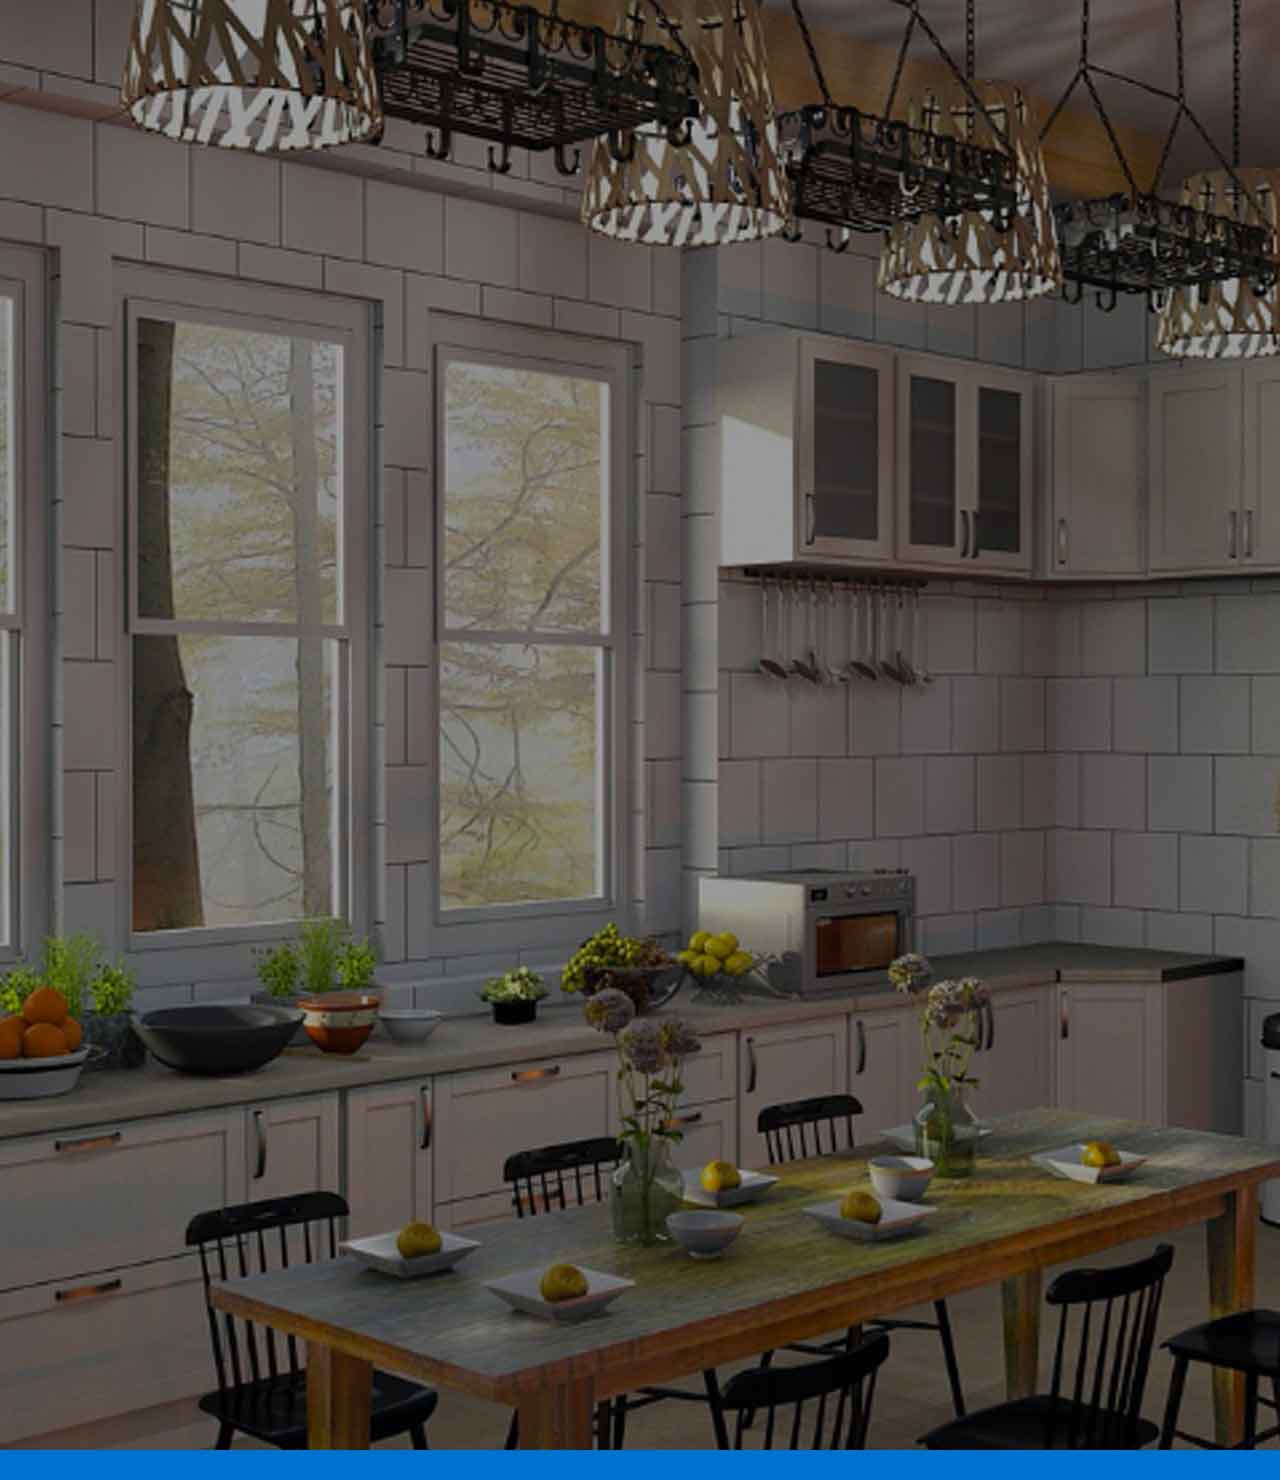 Cómo pintar azulejos para renovar tu cocina en 3 horas